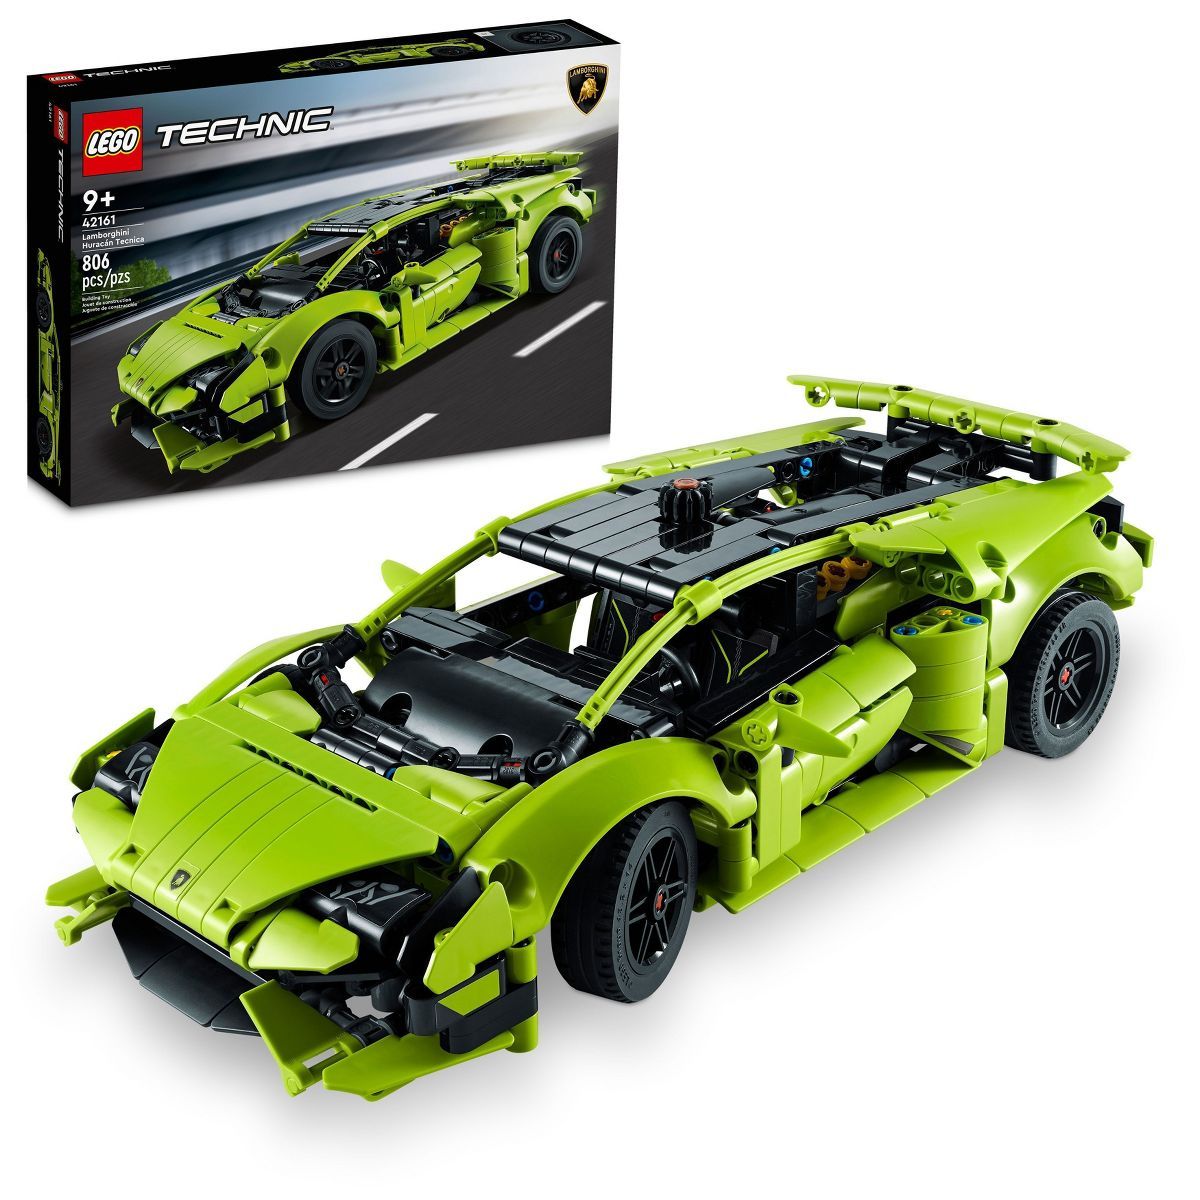 LEGO Technic Lamborghini Huracán Tecnica Advanced Sports Car Building Kit 42161 | Target